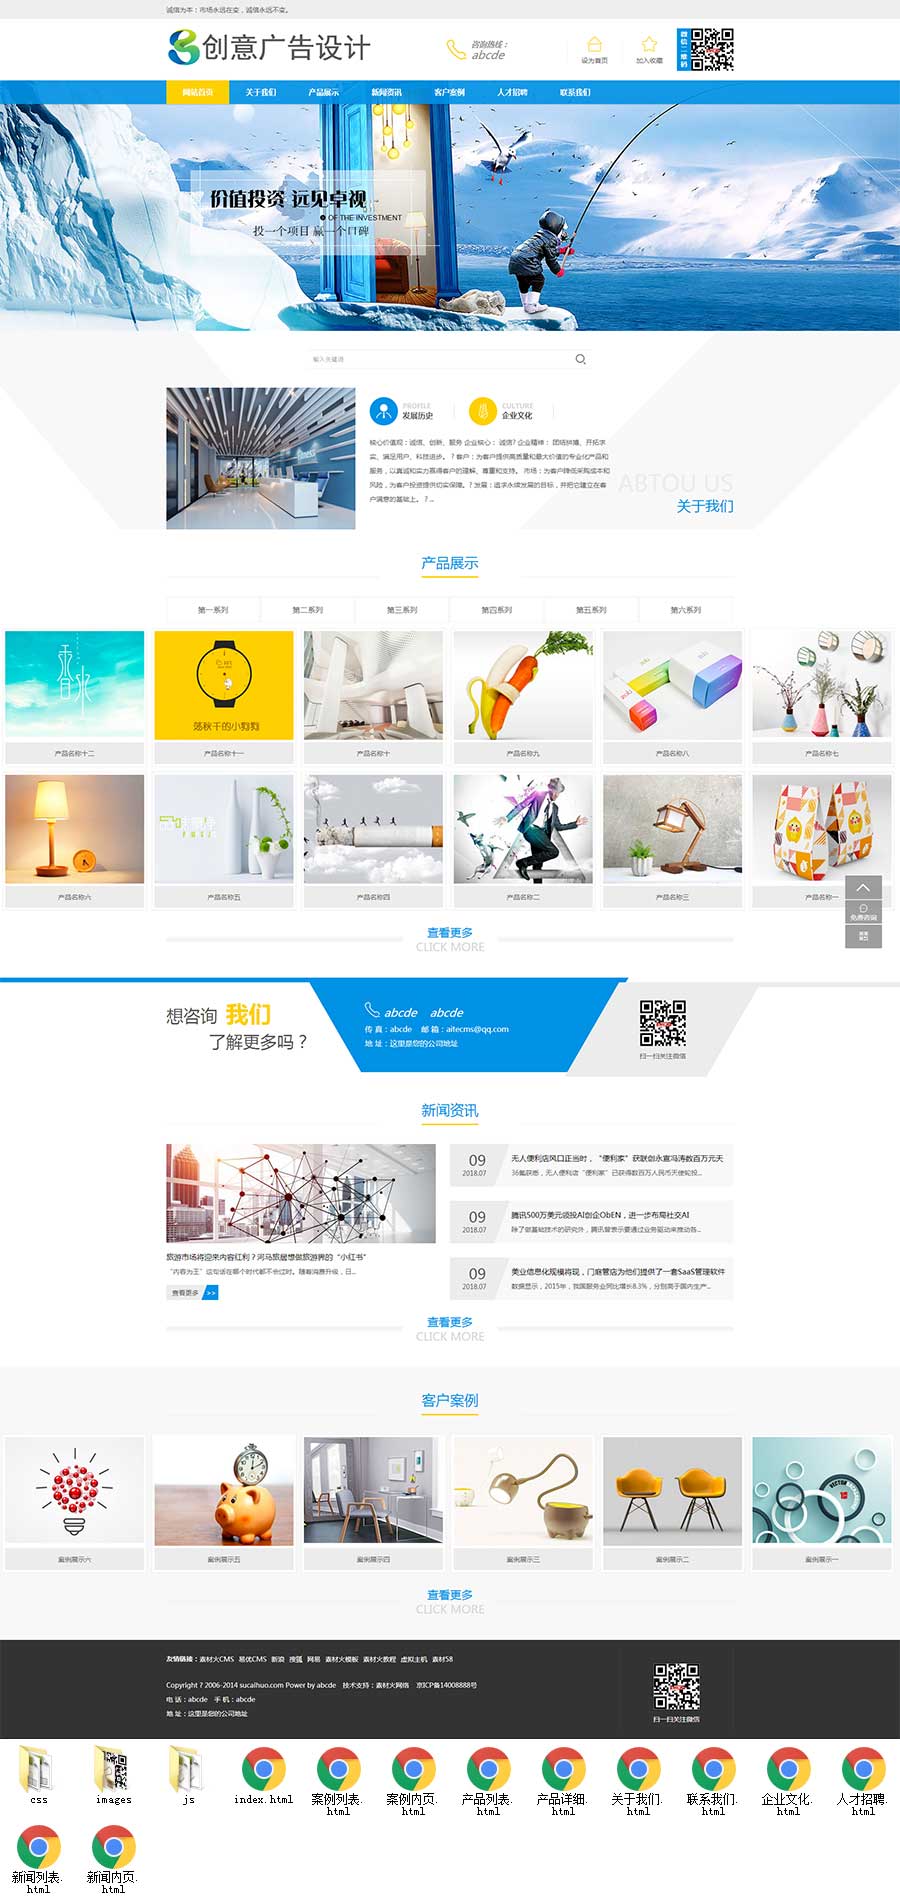 蓝色宽屏大气创意广告设计公司网站模板6172